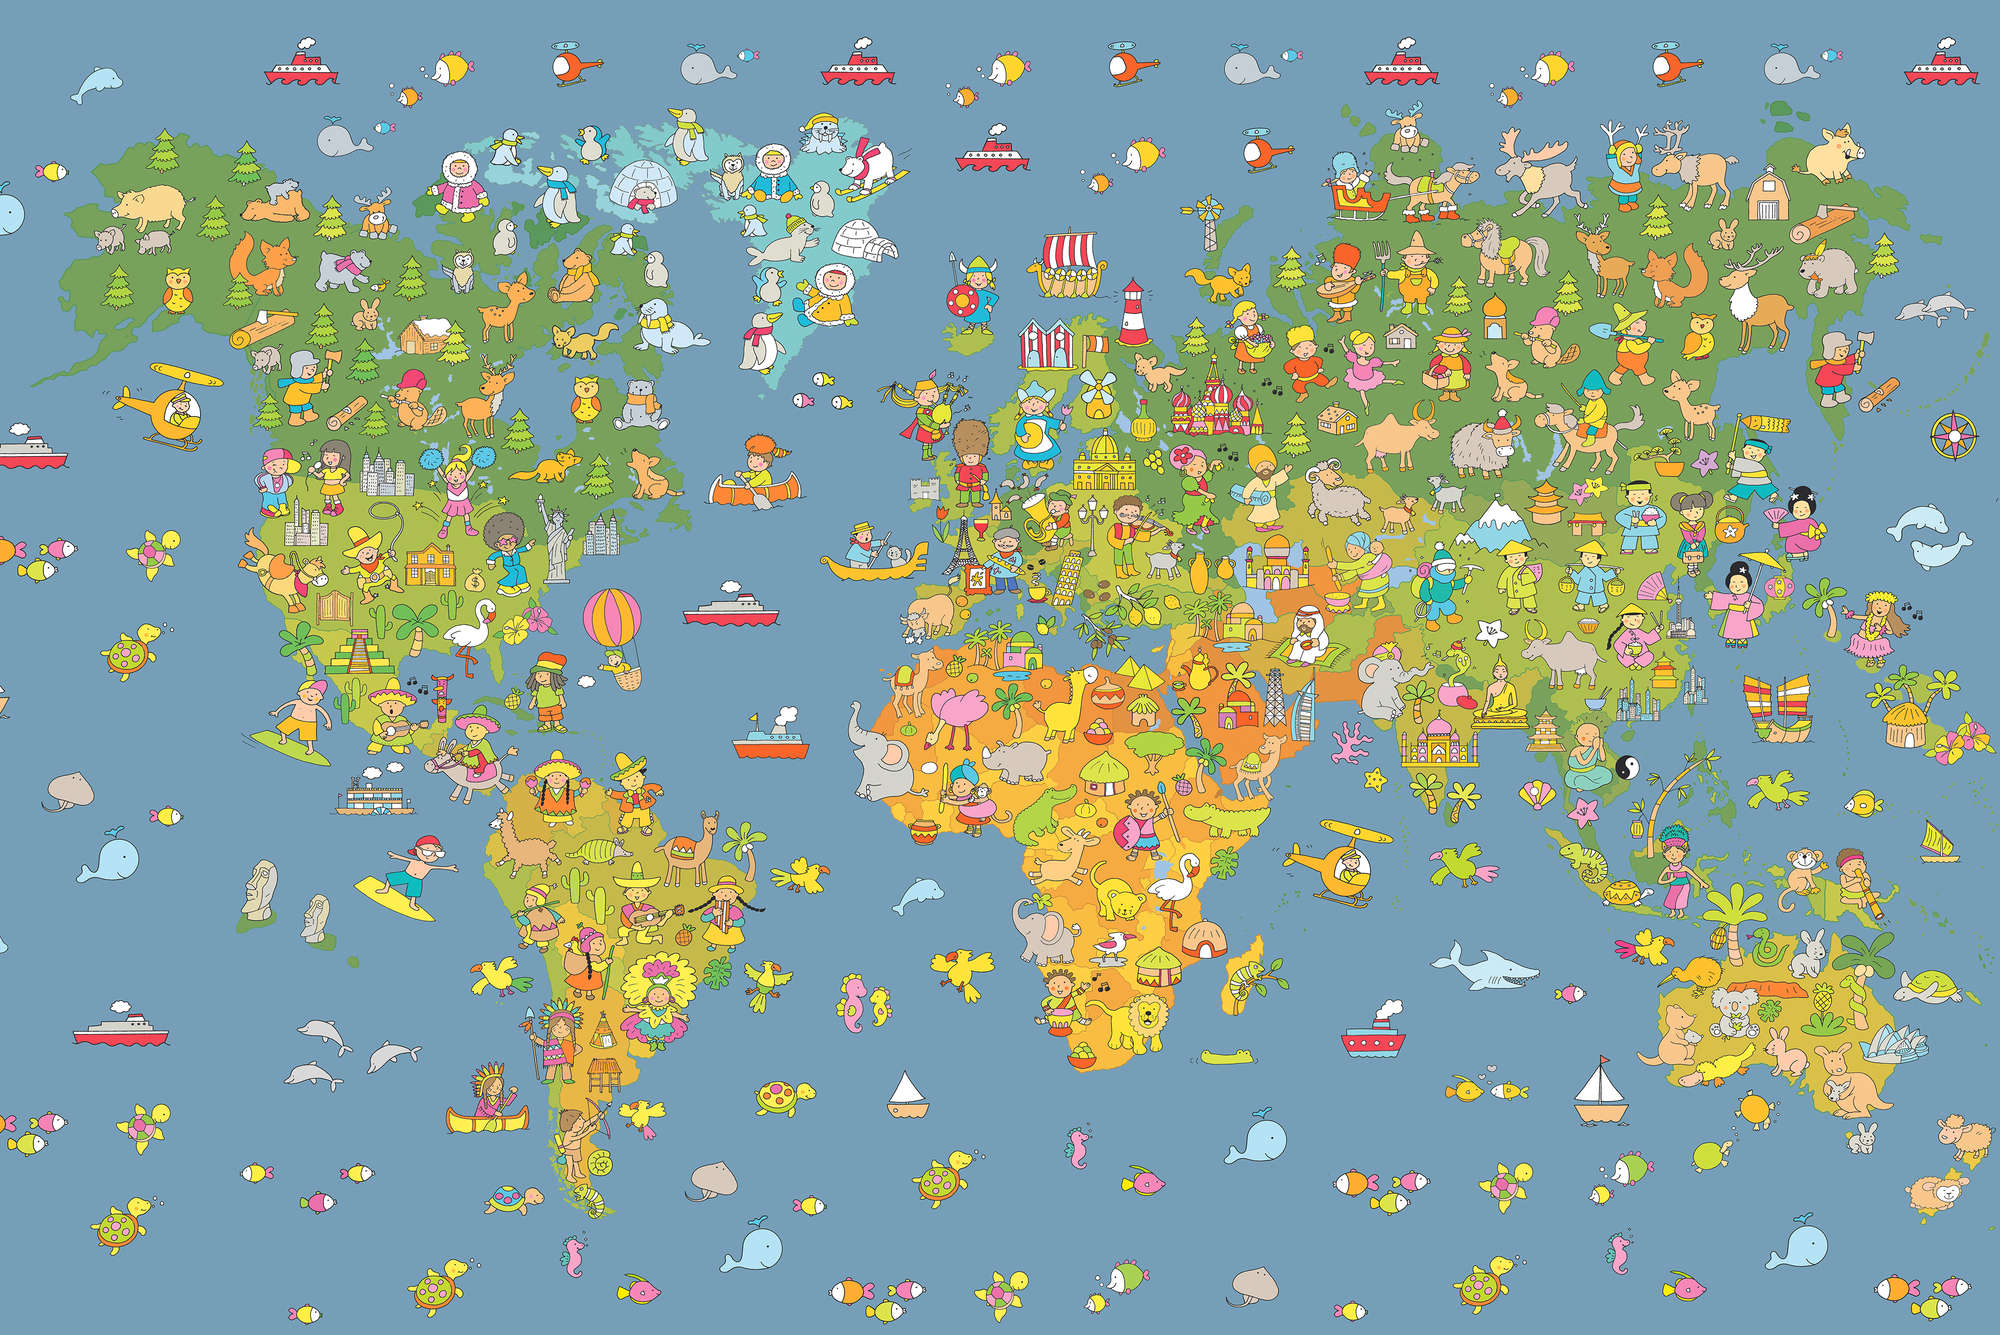             Kinderbehang Wereldkaart met Landensymbolen op premium glad fleece
        